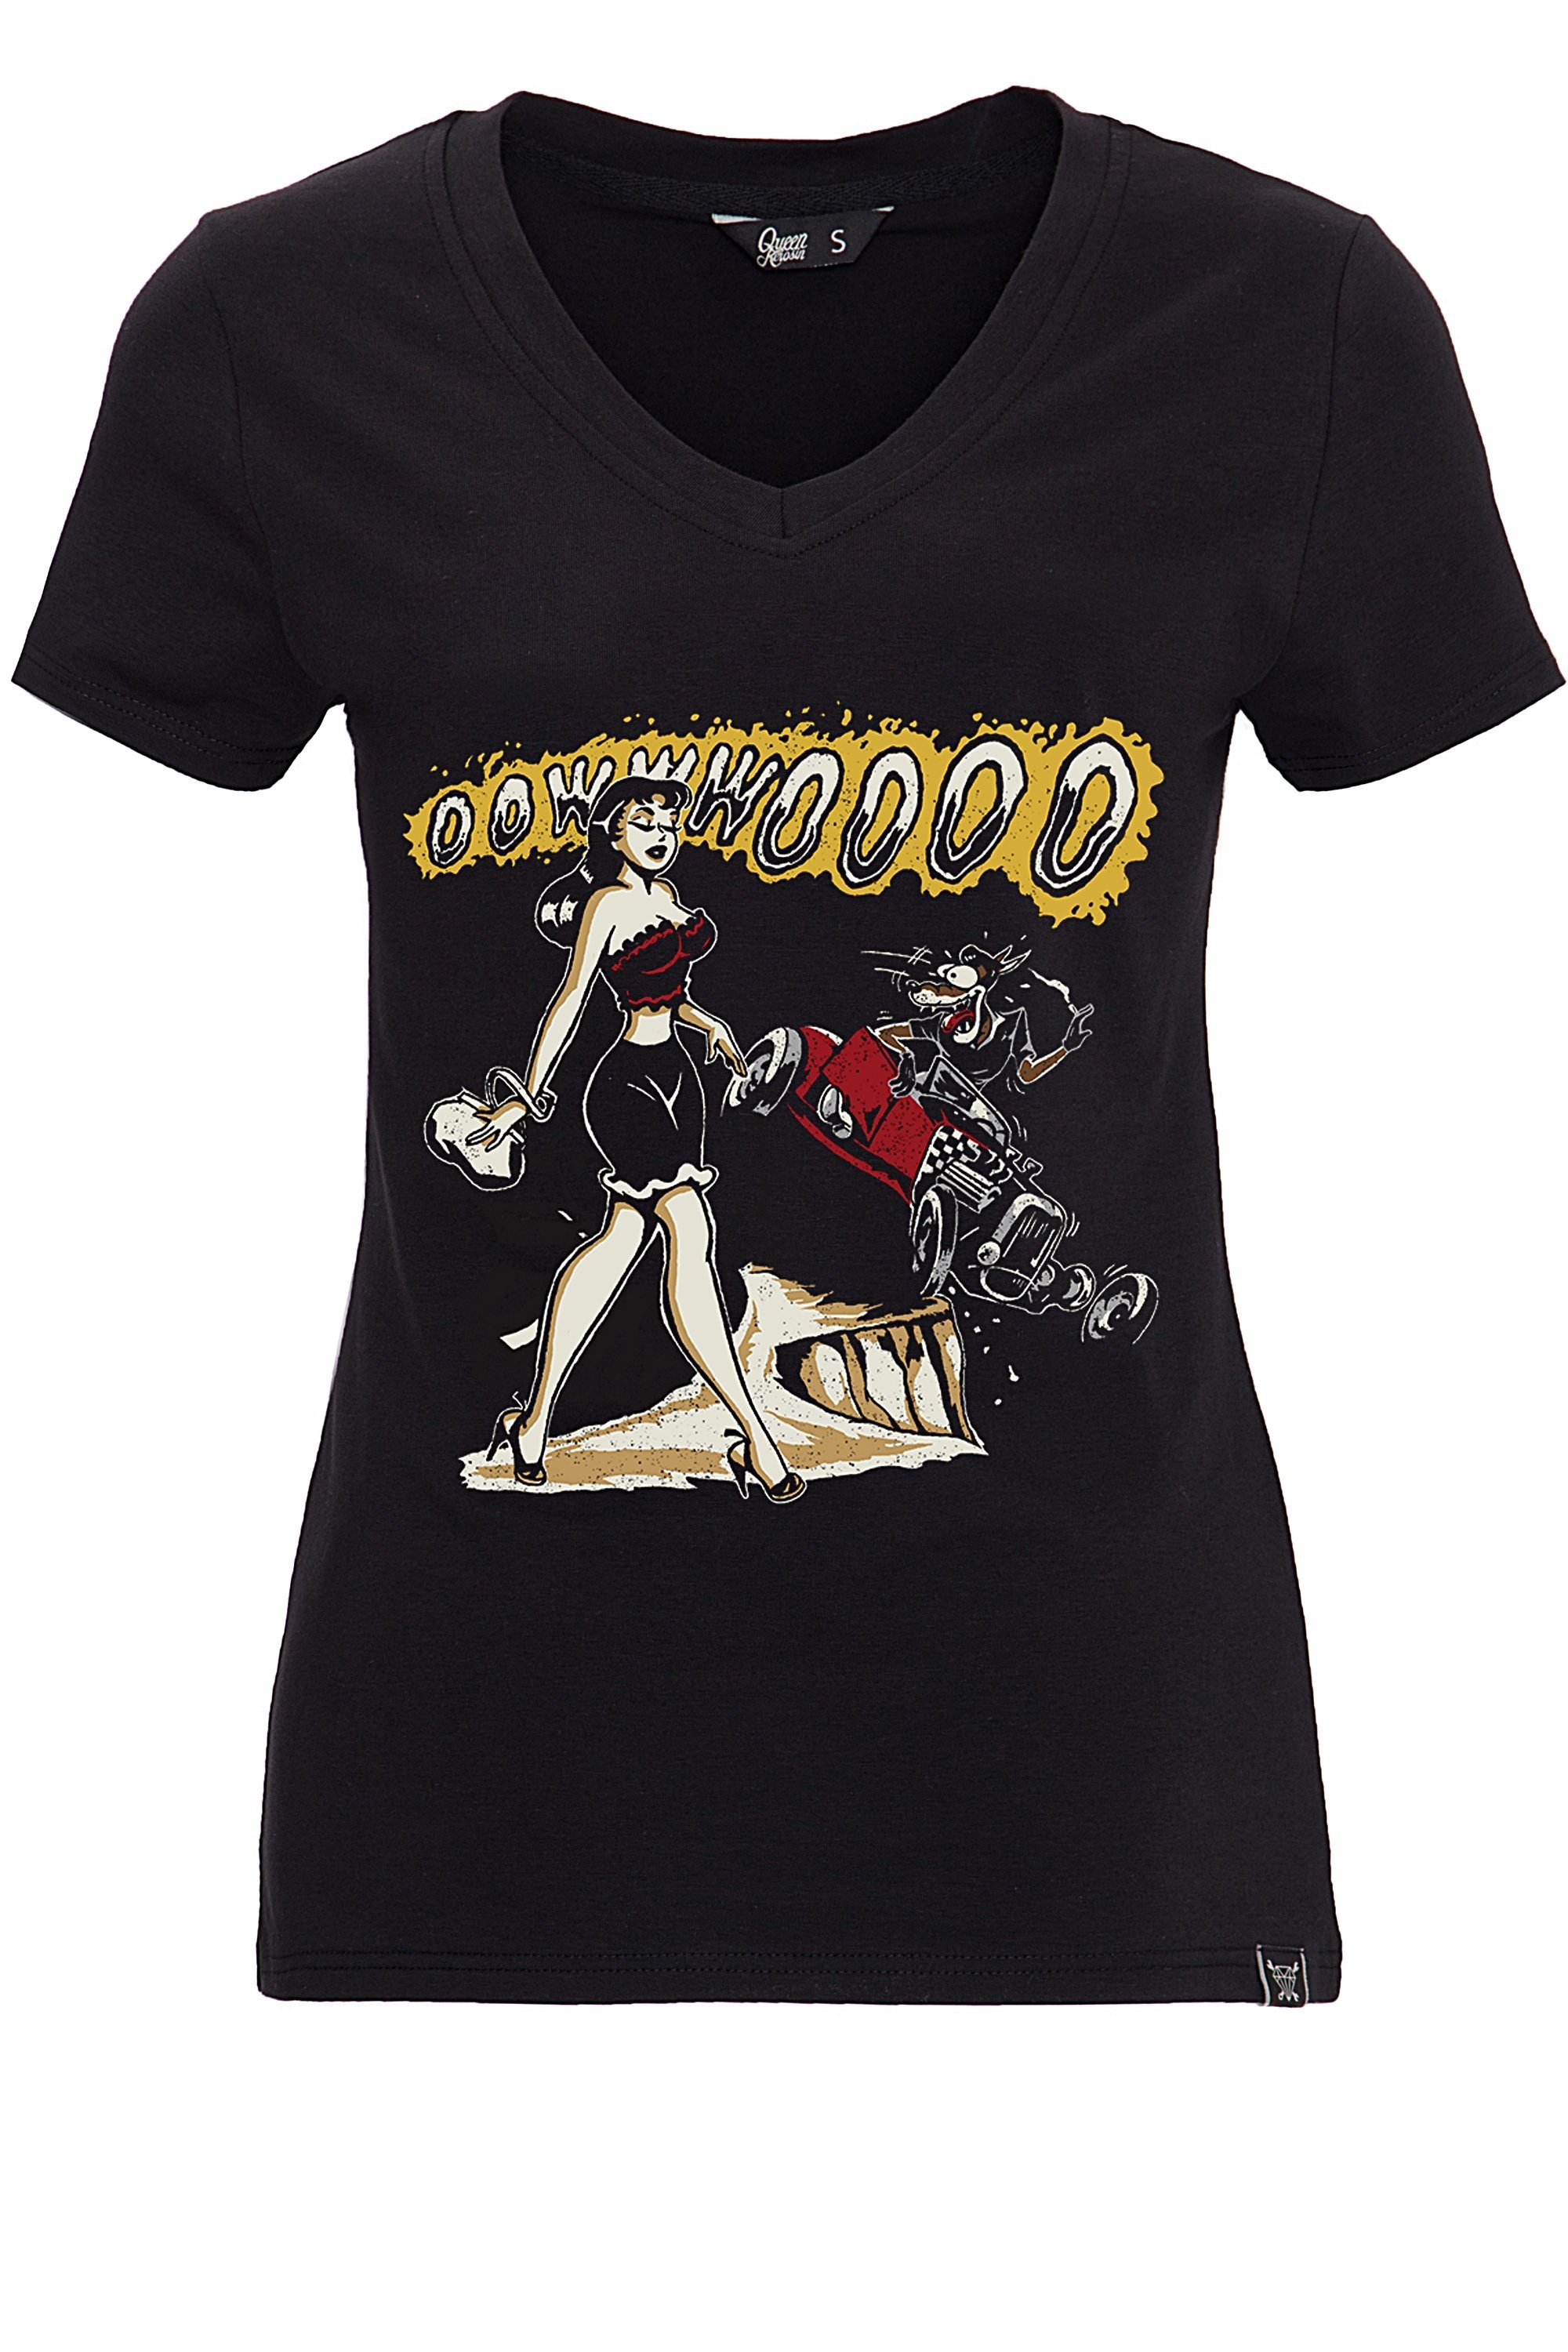 T-Shirt Oowwwoooo schwarz V-Ausschnitt Frontprint und QueenKerosin mit